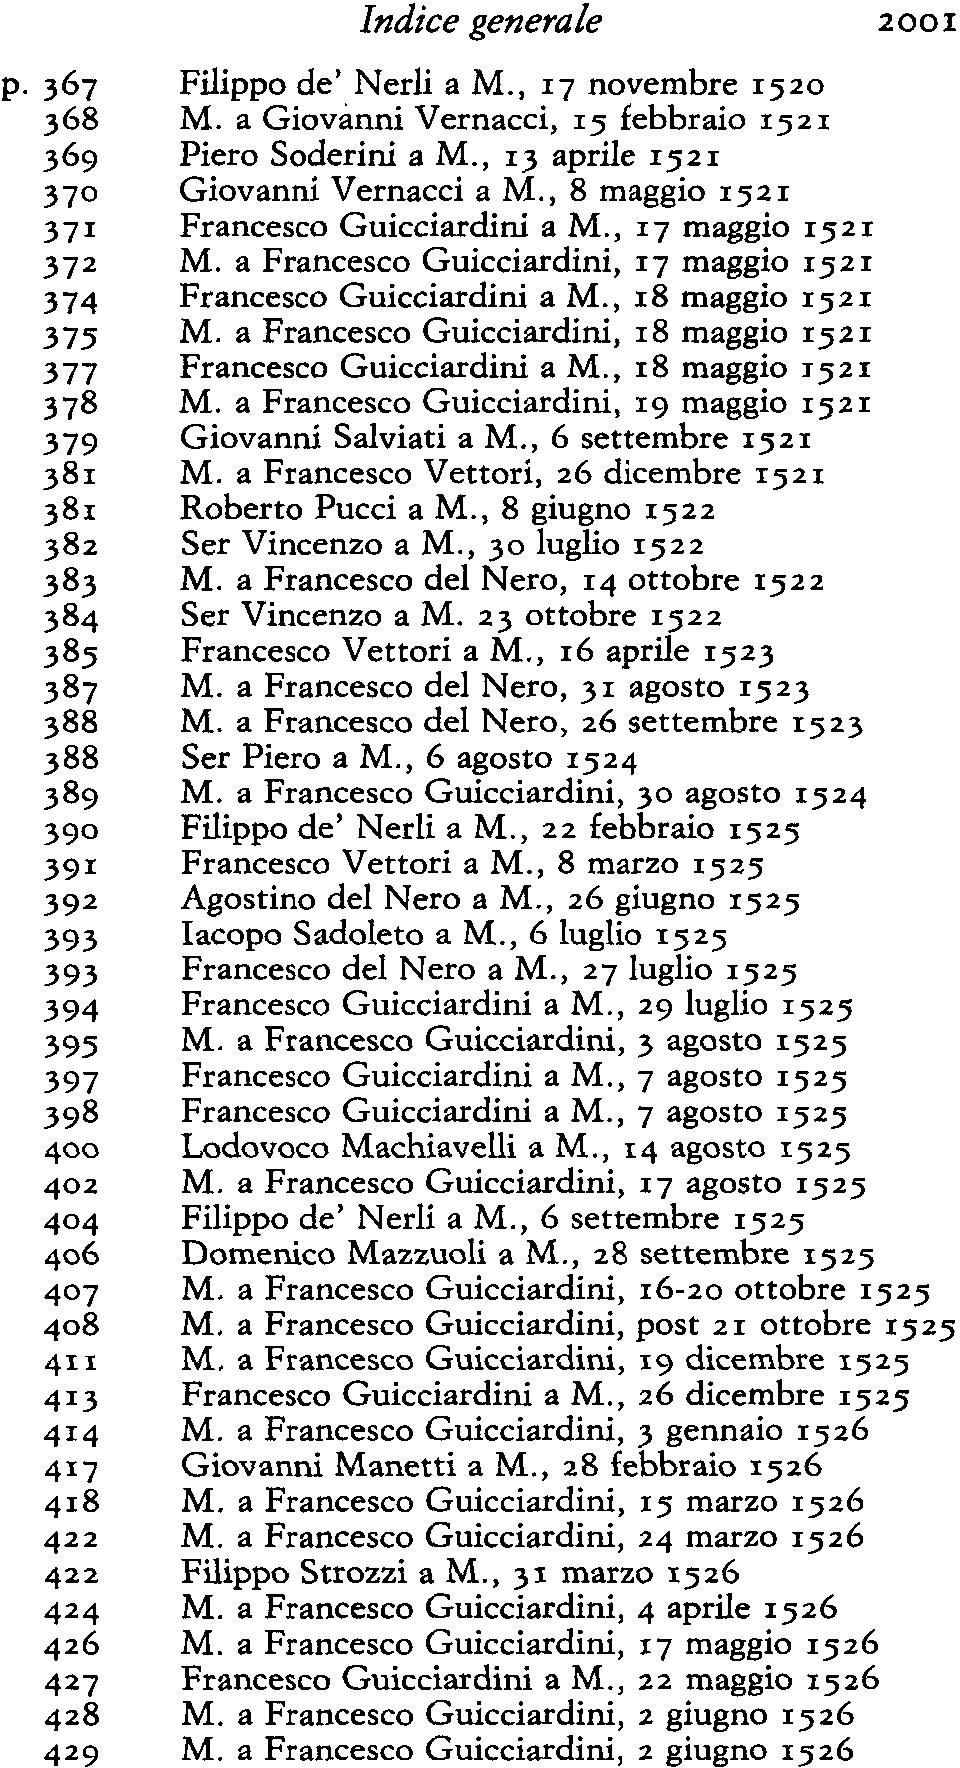 a Francesco Guicciardini, 18 maggio ig2i 377 Francesco Guicciardini a M., 18 maggio ig2i 378 M. a Francesco Guicciardini, 19 maggio ig2i 379 Giovanni Salviati a M., 6 settembre ig2i 381 M.